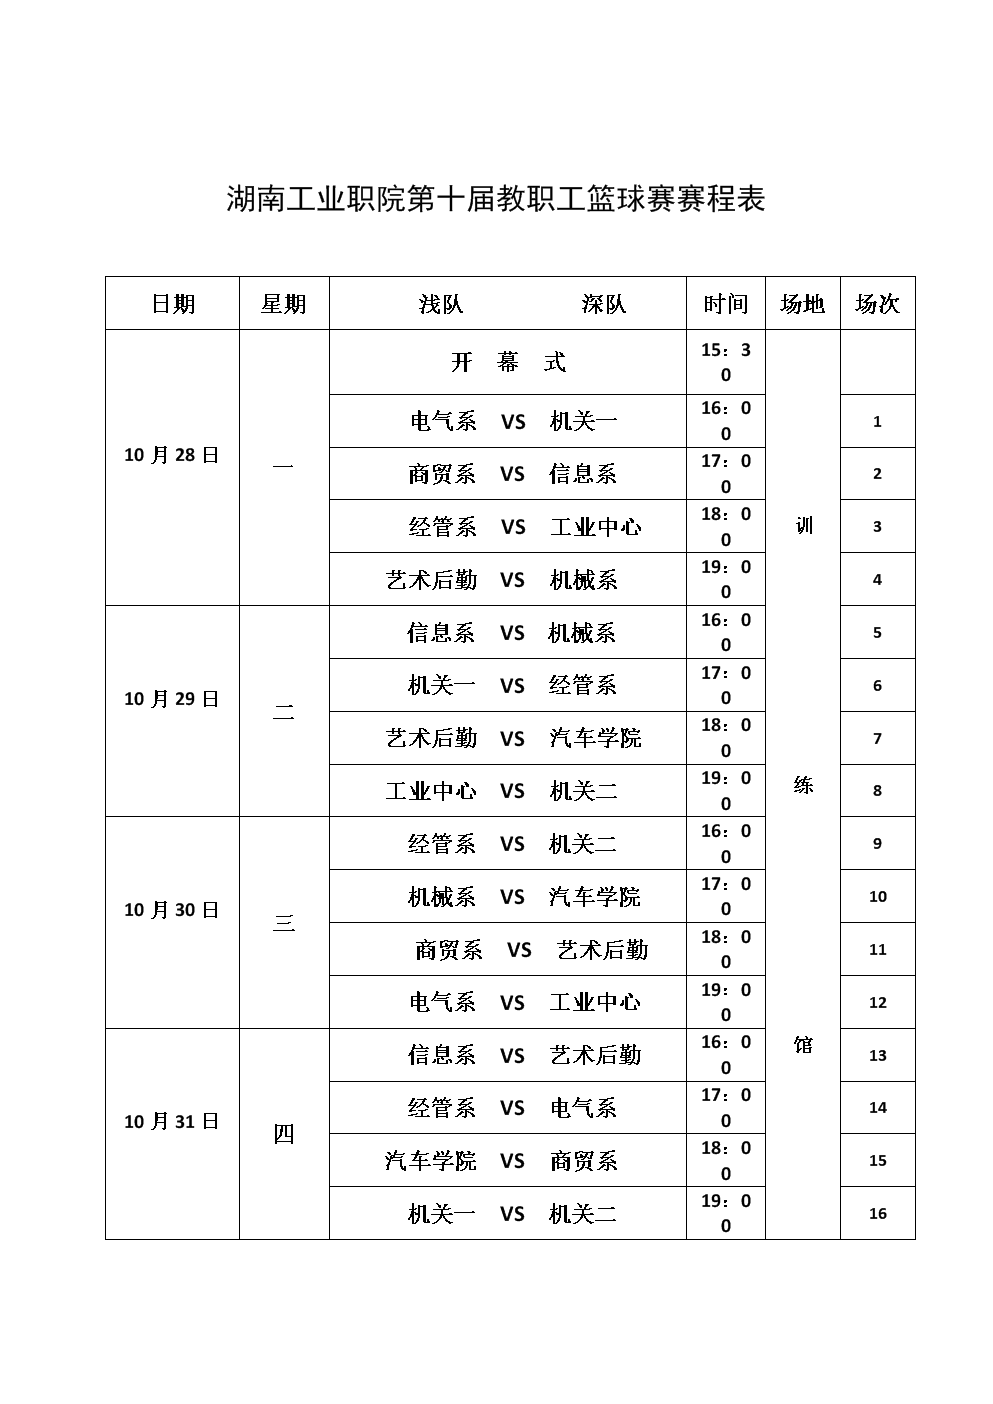 
本期国家队上海集结国安6将入选(图/简历)